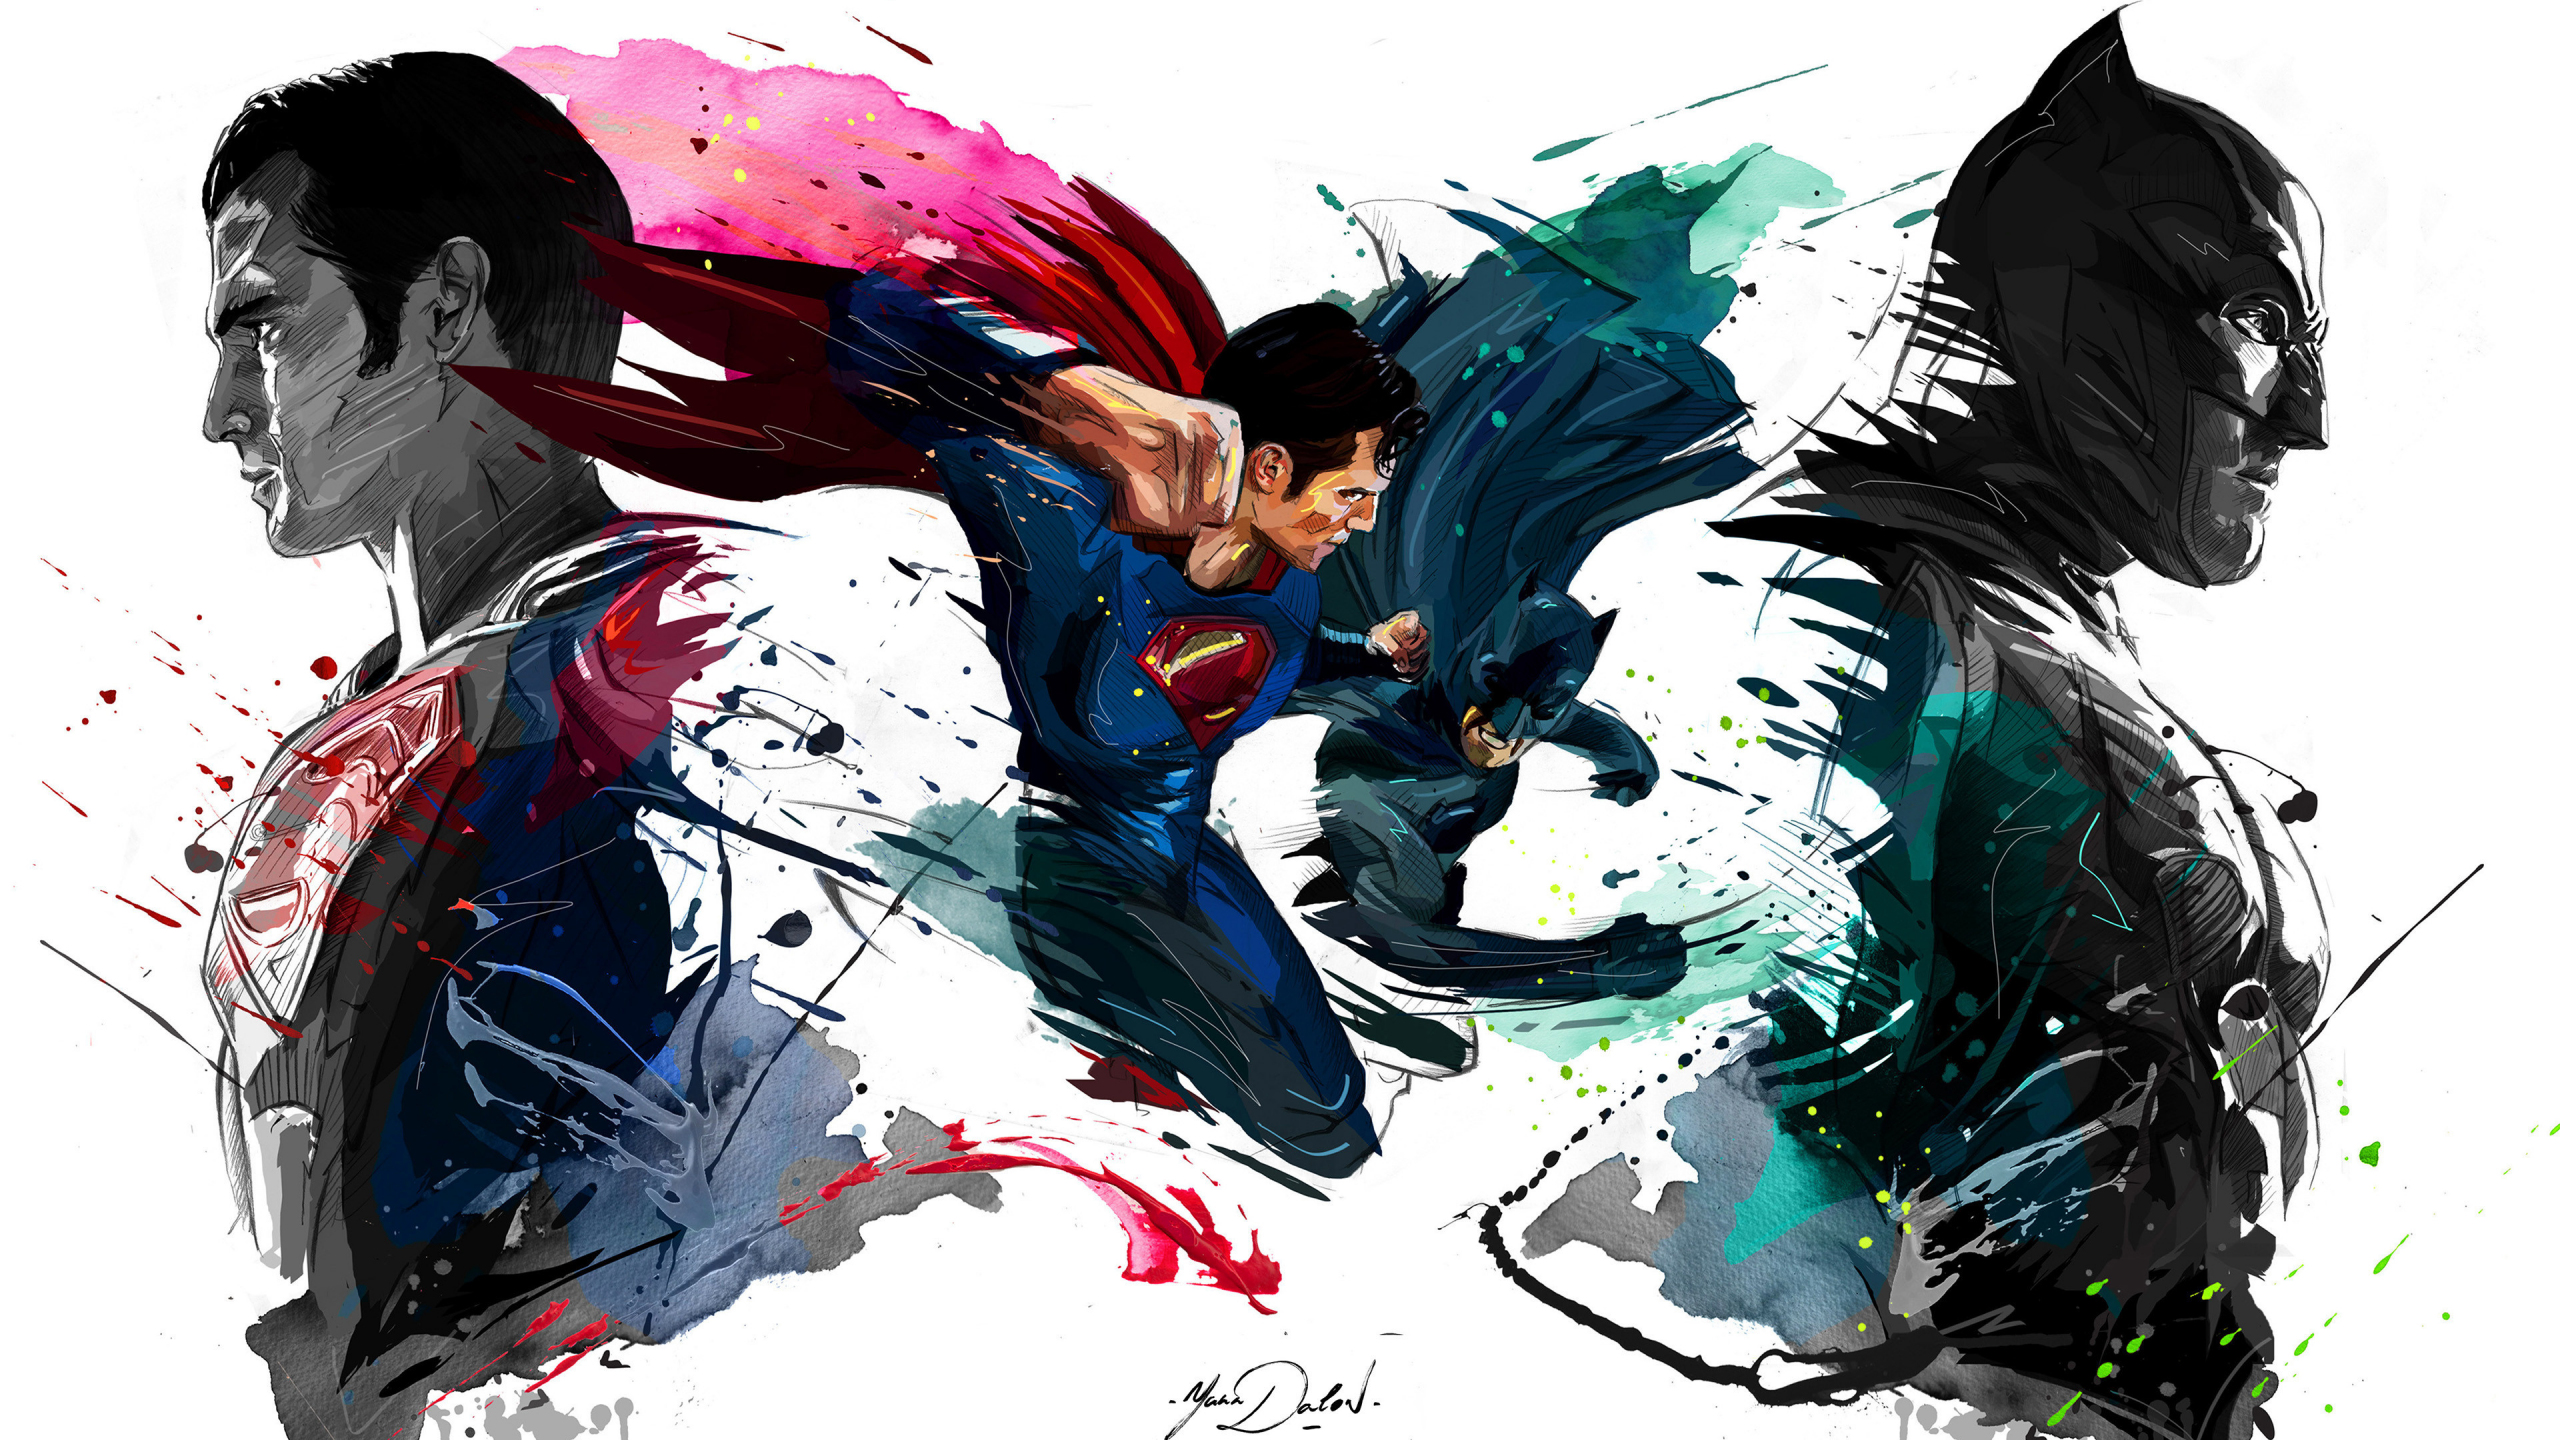 Batman vs superman, 4k, sketch artwork, 2560x1440 wallpaper